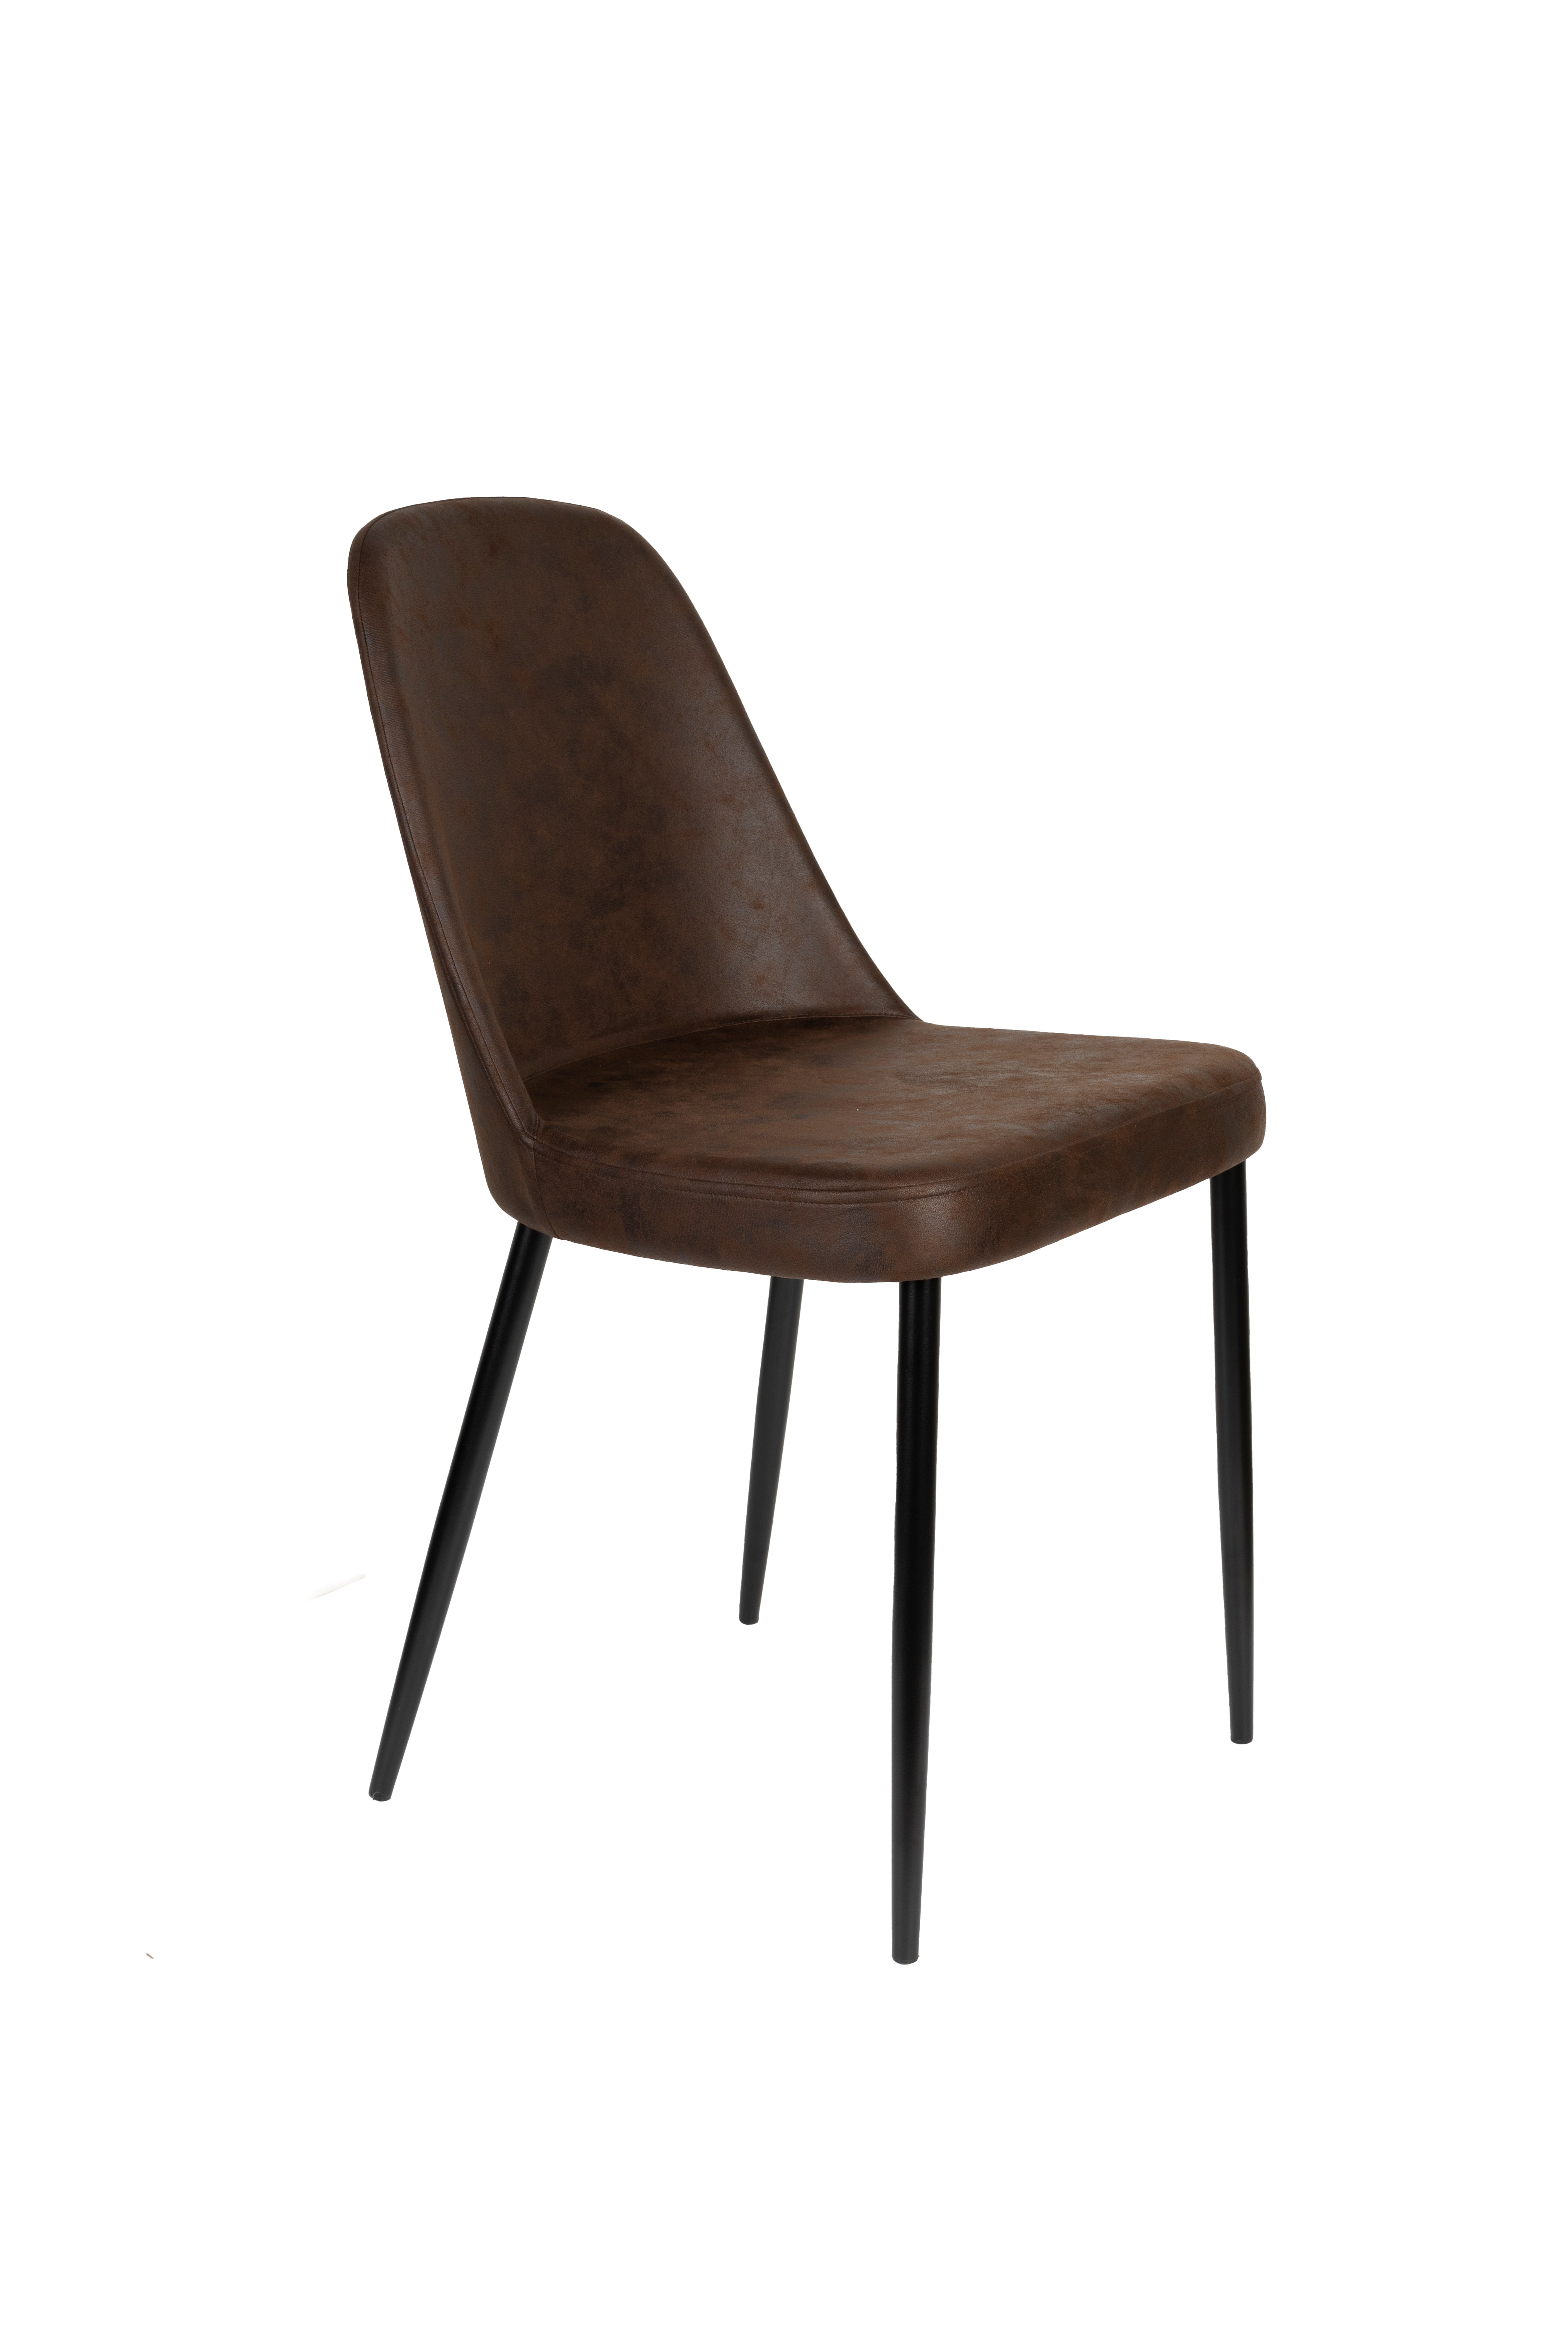 Stuhl Alana in Braun präsentiert im Onlineshop von KAQTU Design AG. Stuhl ist von White Label Living